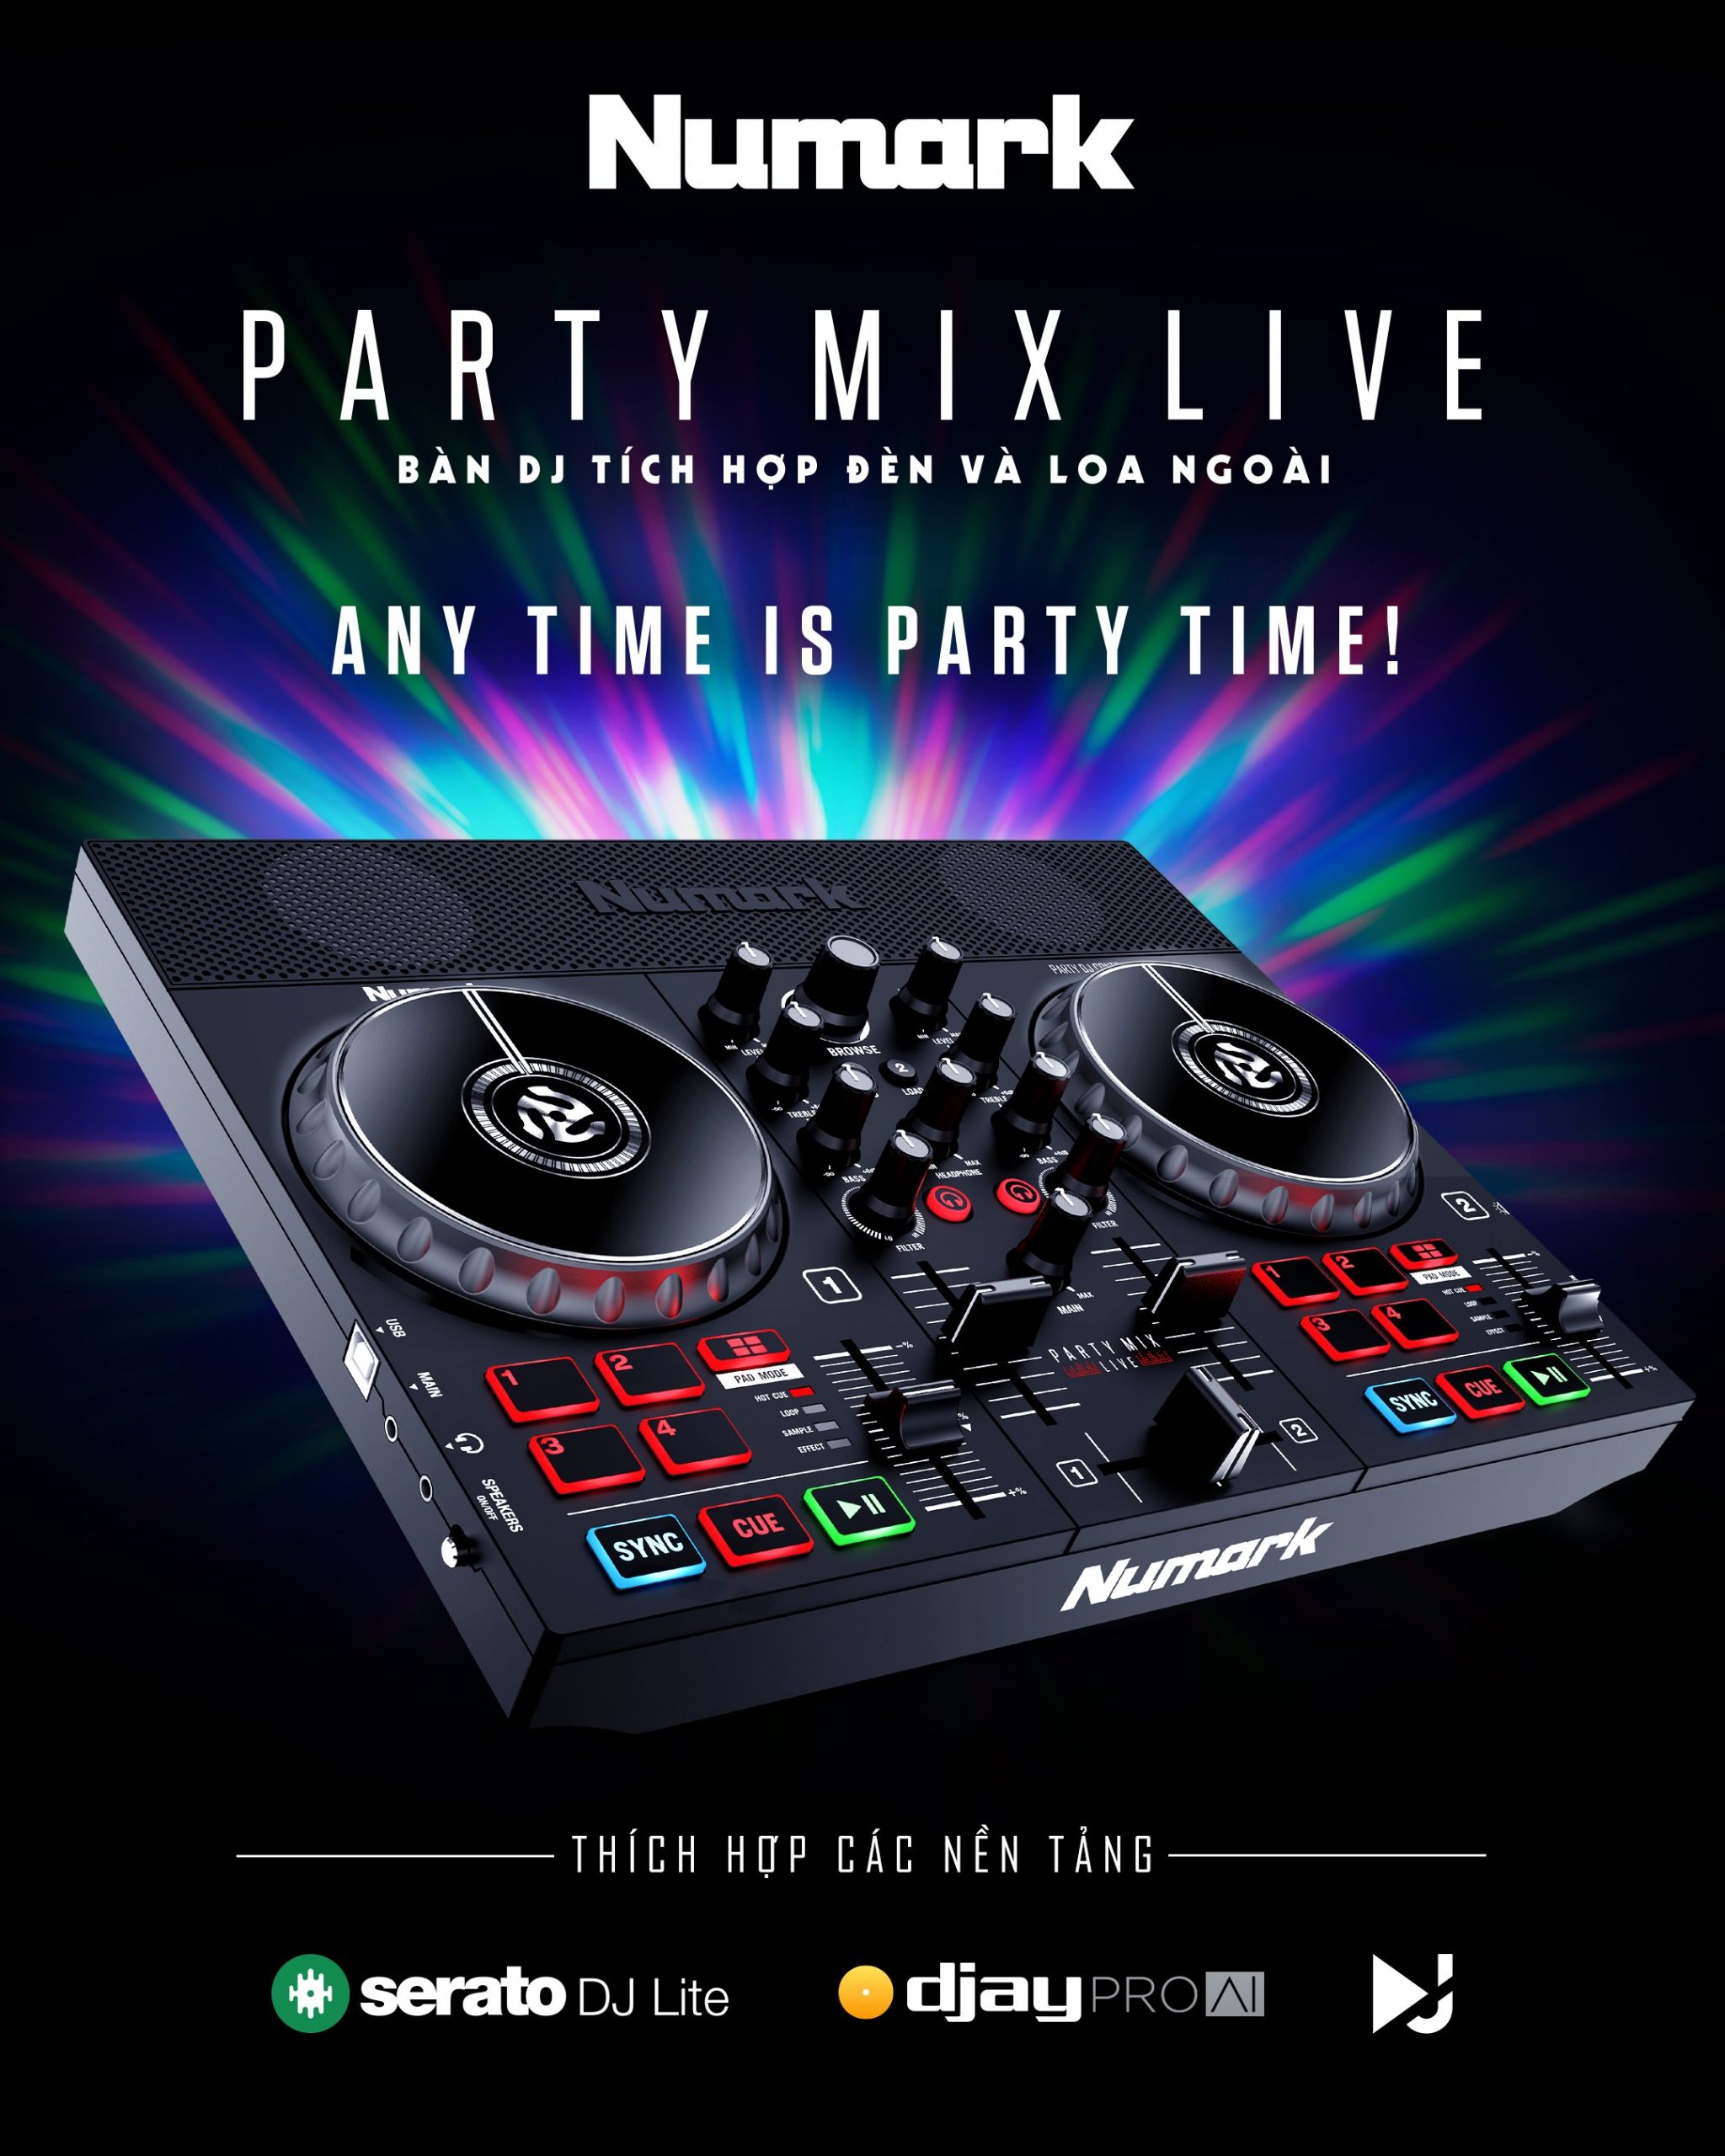 bàn dj giá rẻ numark party mix live